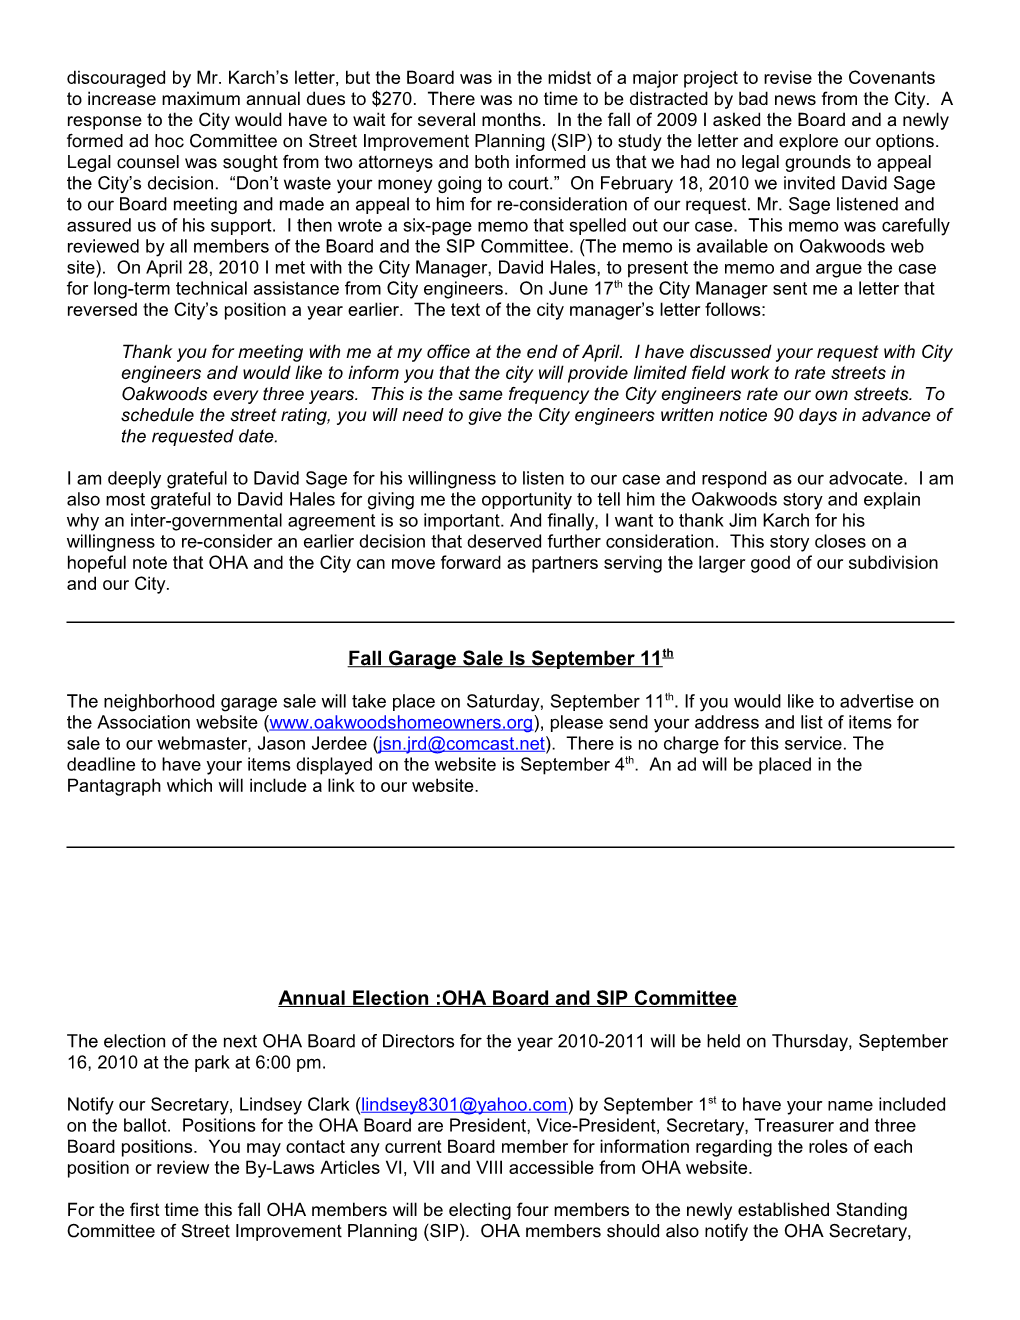 The Newsletter for Oakwoods Homeowner S Association - August 2010